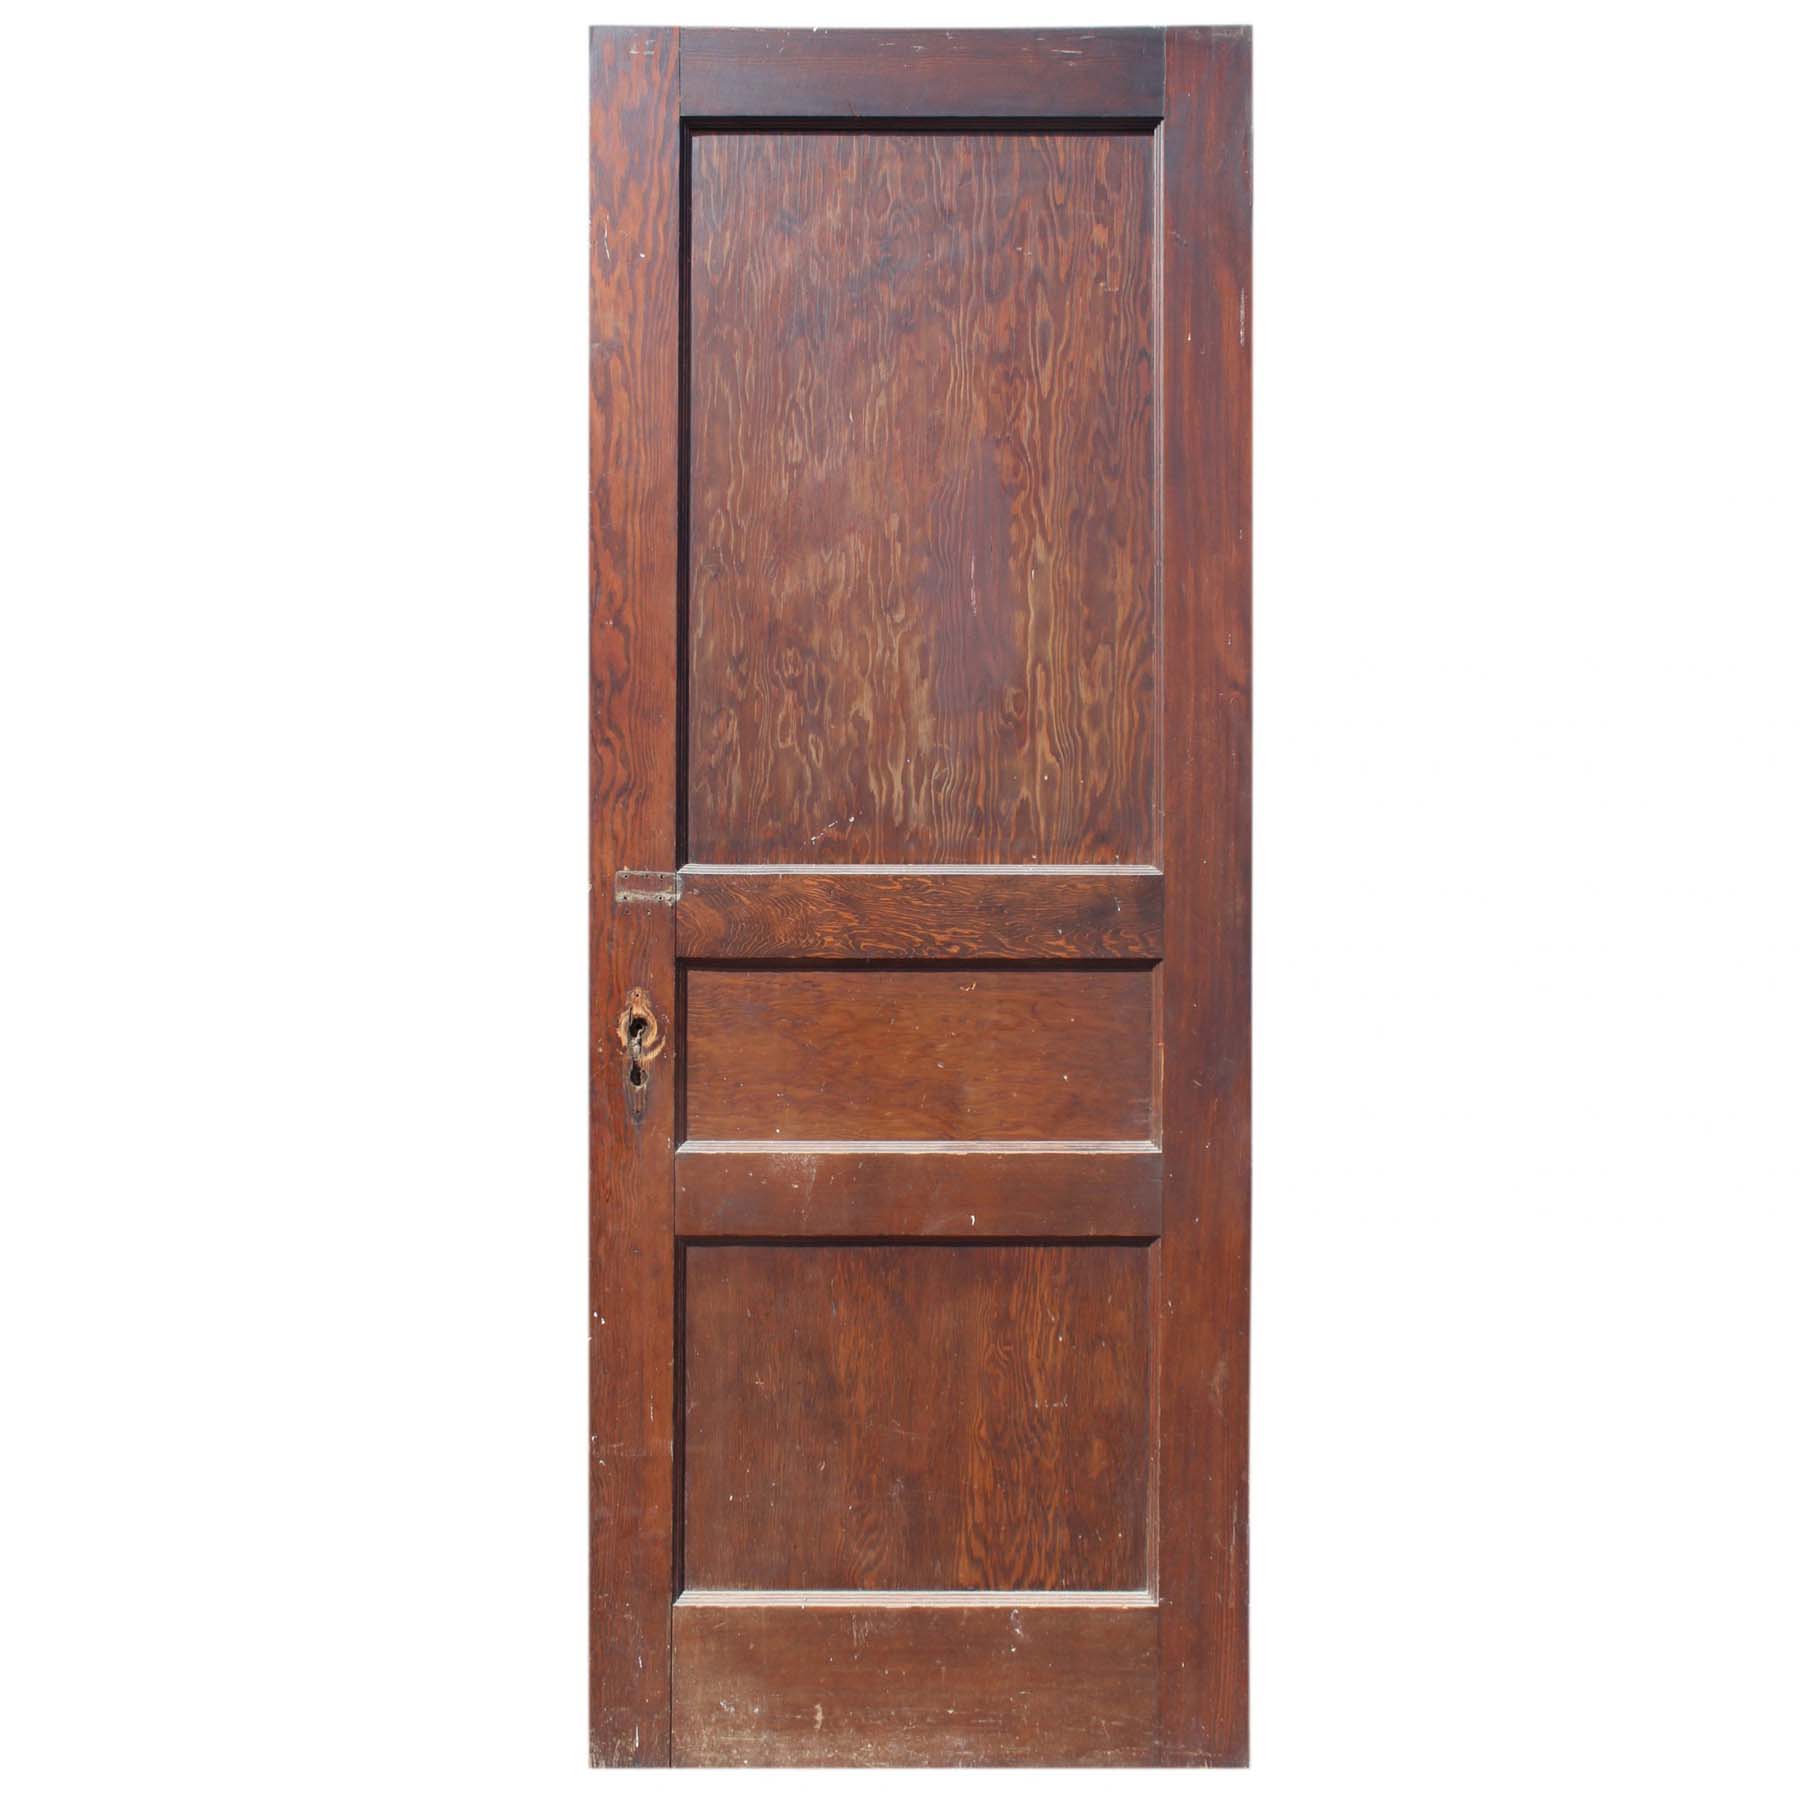 SOLD Reclaimed 30” Three-Panel Solid Wood Door-0